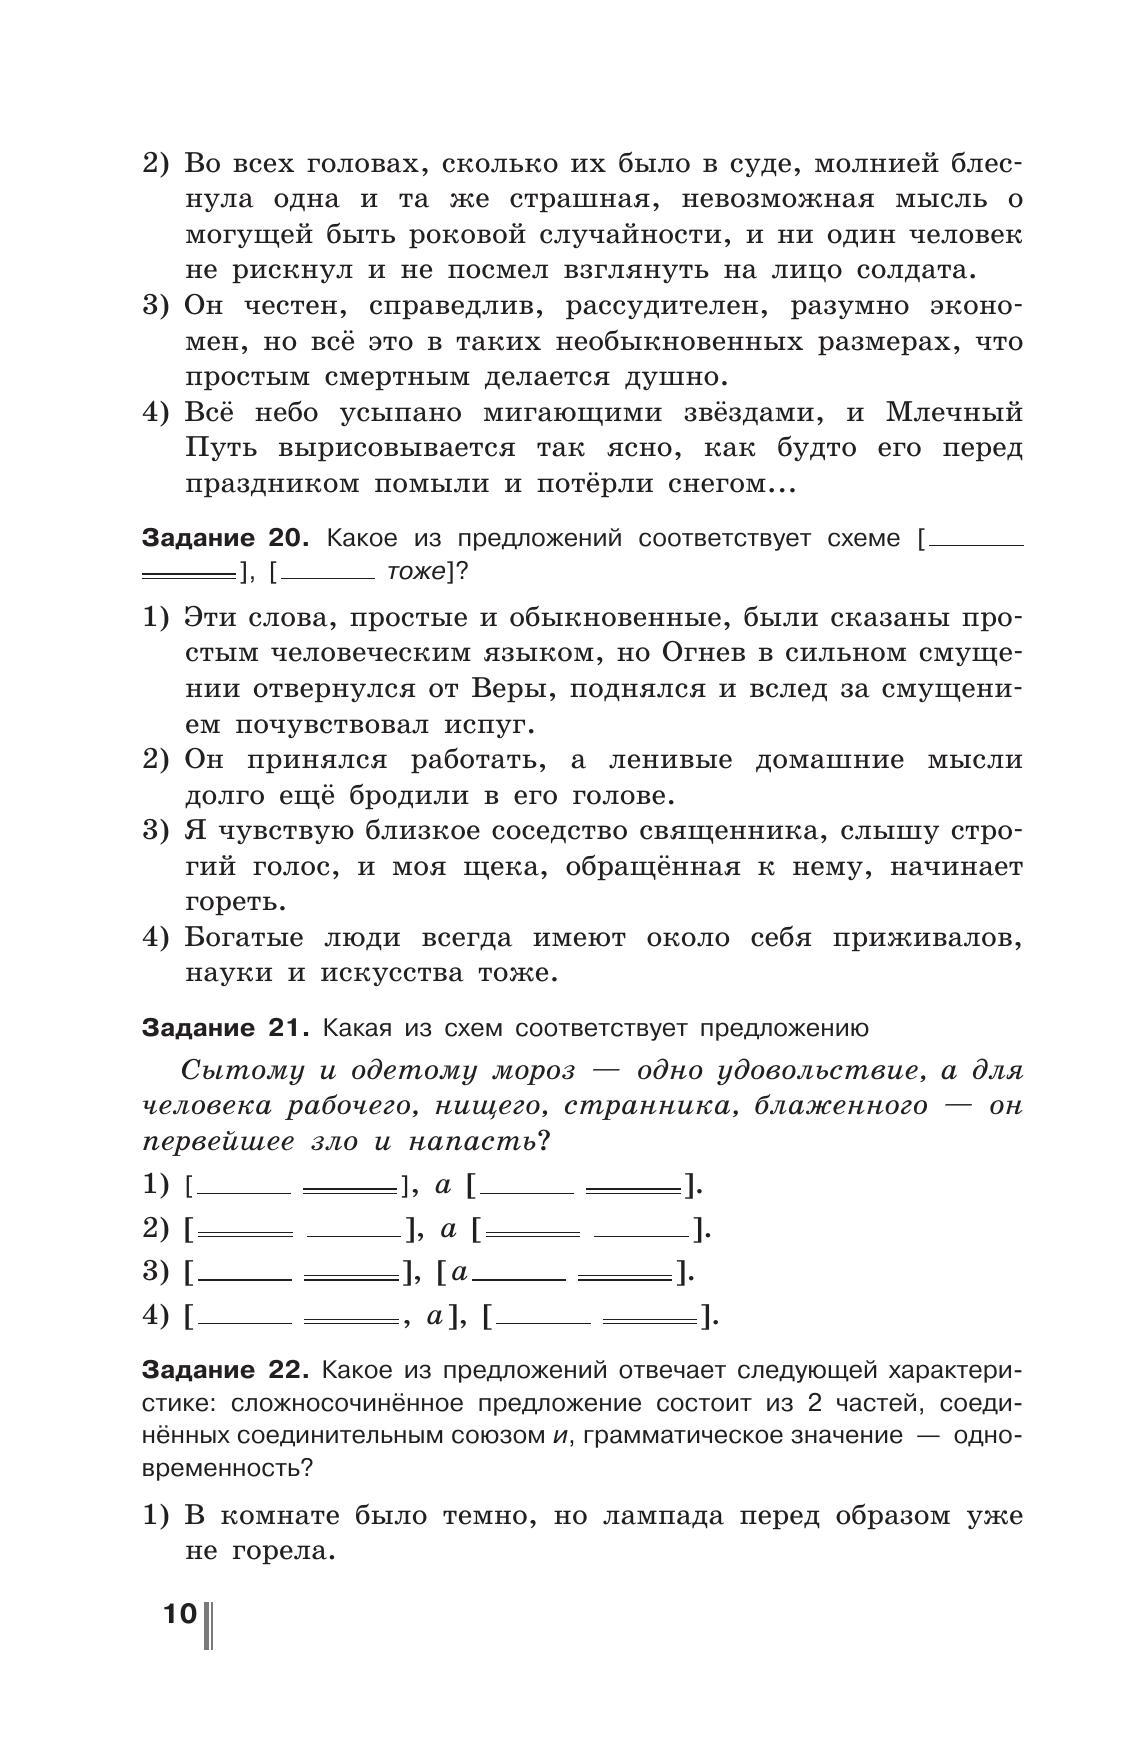 Русский язык. Готовимся к ГИА/ОГЭ. Тесты, творческие работы, проекты. 9 класс 3